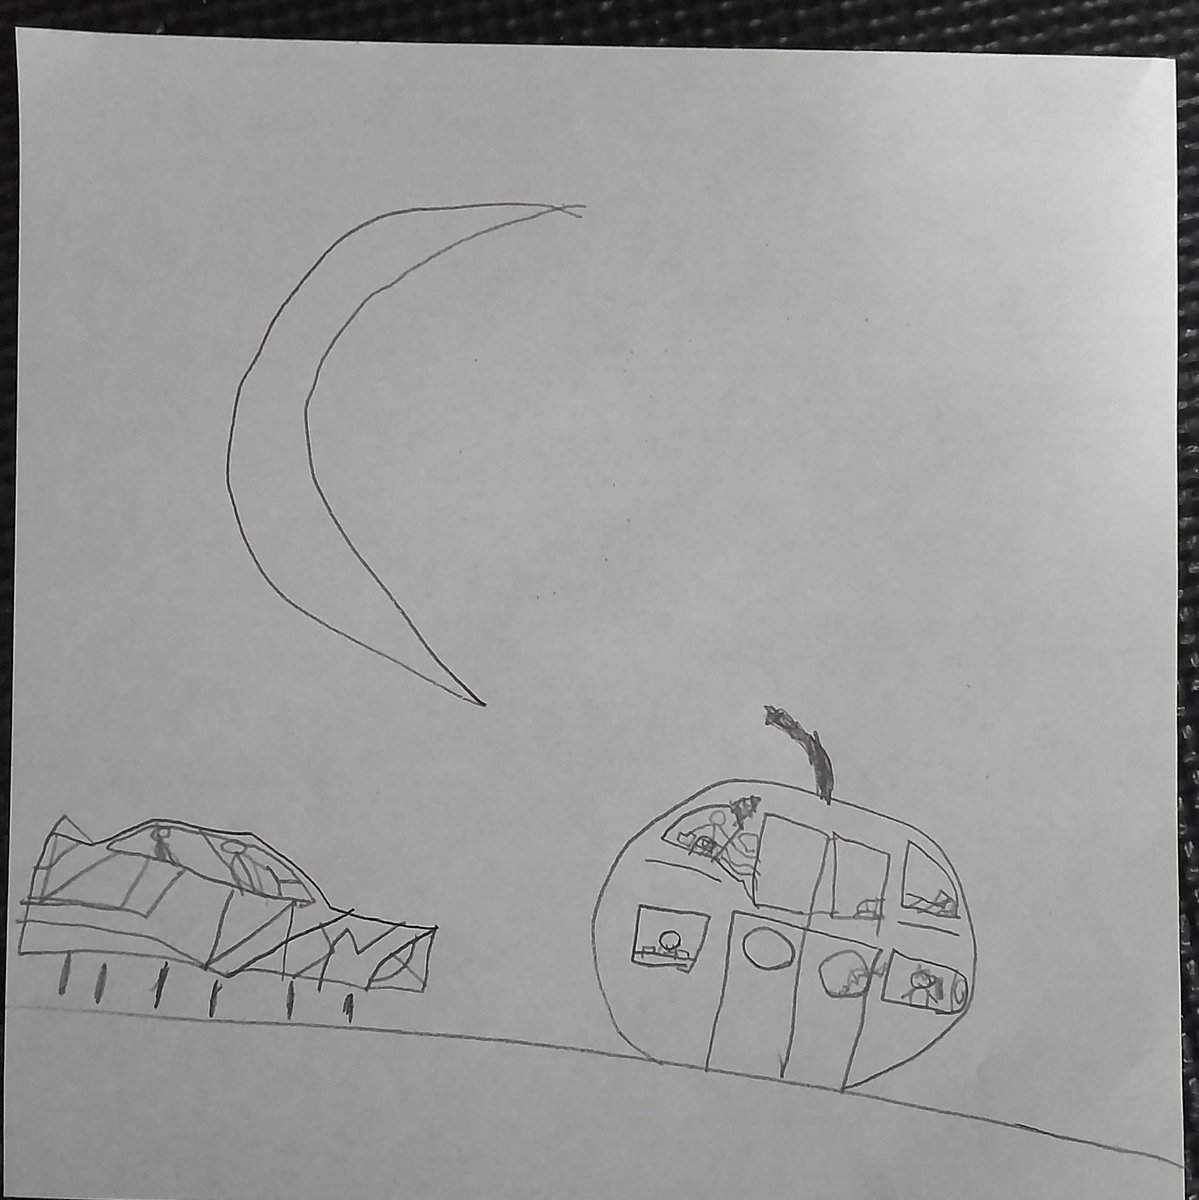 この後も「あぶないきかいのおもちゃ」とか描いていたけど、
心が落ち着いてきたのか憧れを示すような絵も描いていた。

リンゴ型の集合住宅、大きな月と、浮いて進む未来のカッコイイ車🍎🌜️🏎️
#4歳 